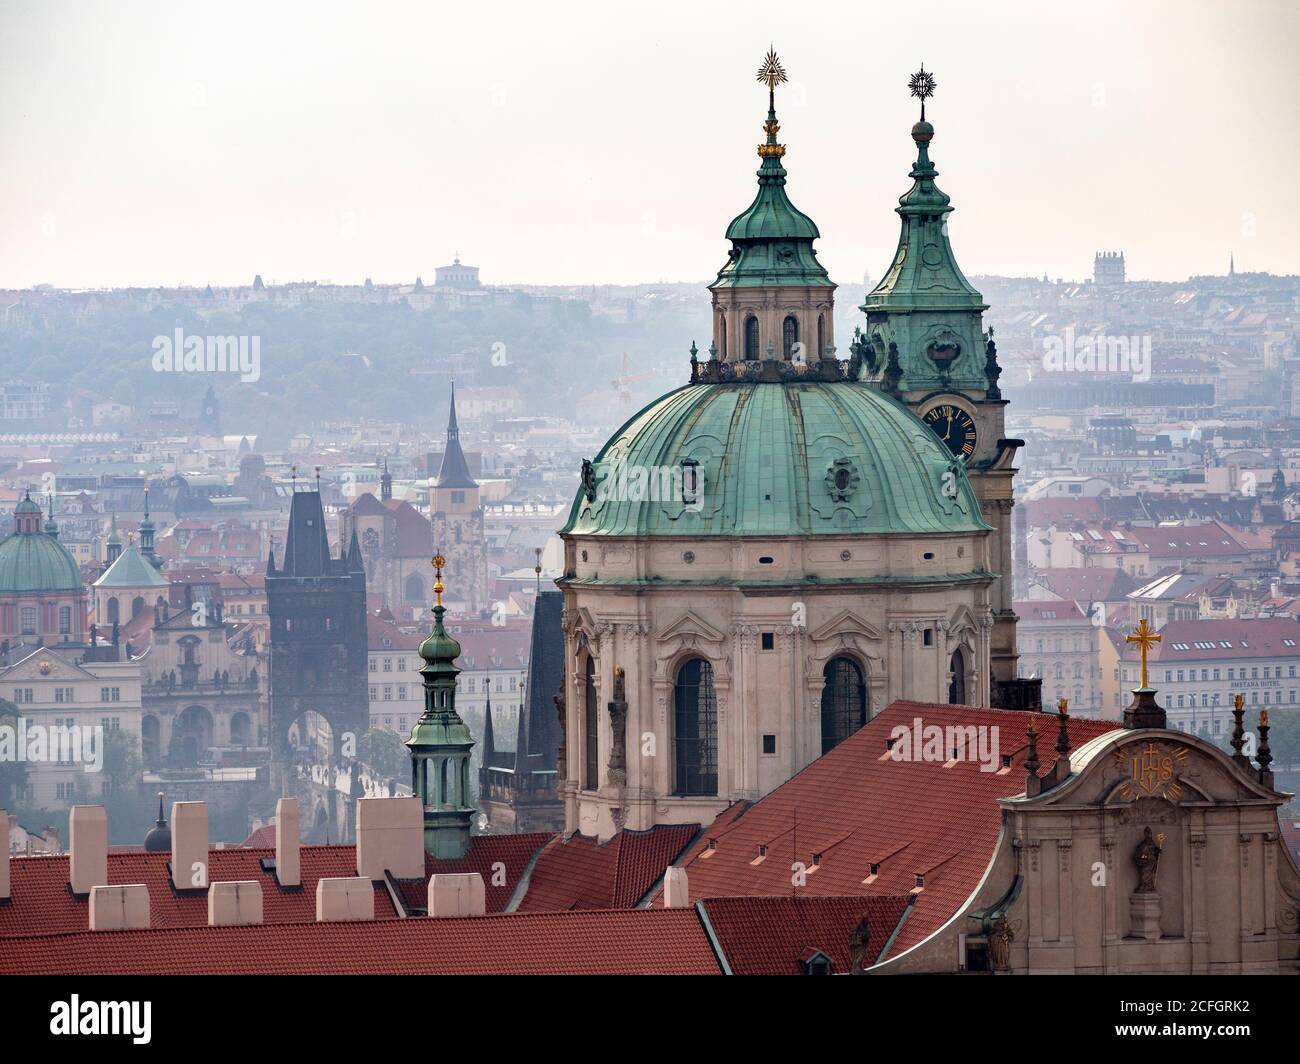 Praga dal Castello: Una panoramica della città e delle sue guglie di prima mattina dai terreni del castello. La cupola di San Nicola domina il foregorund con il Ponte Carlo nel terreno centrale. Foto Stock